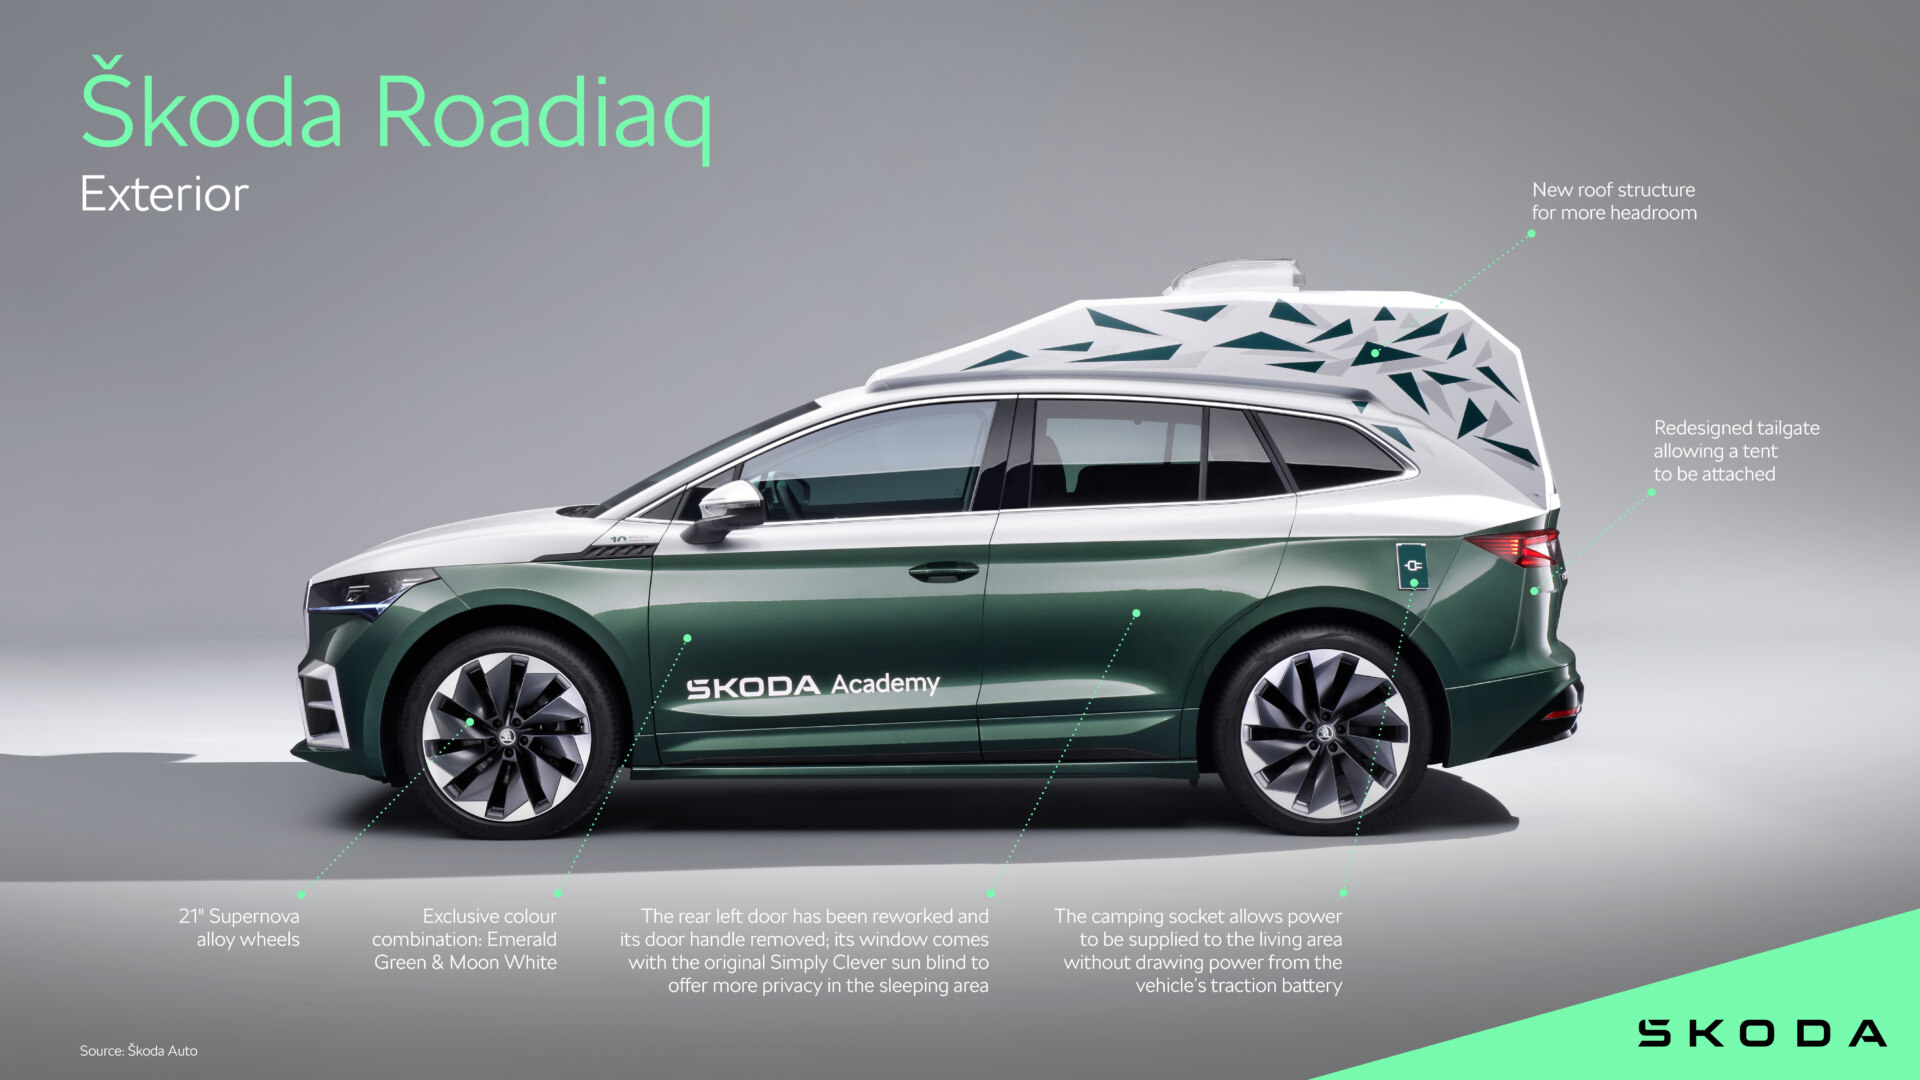 Škoda Roadiaq, ένα Enyaq για κάμπινγκ